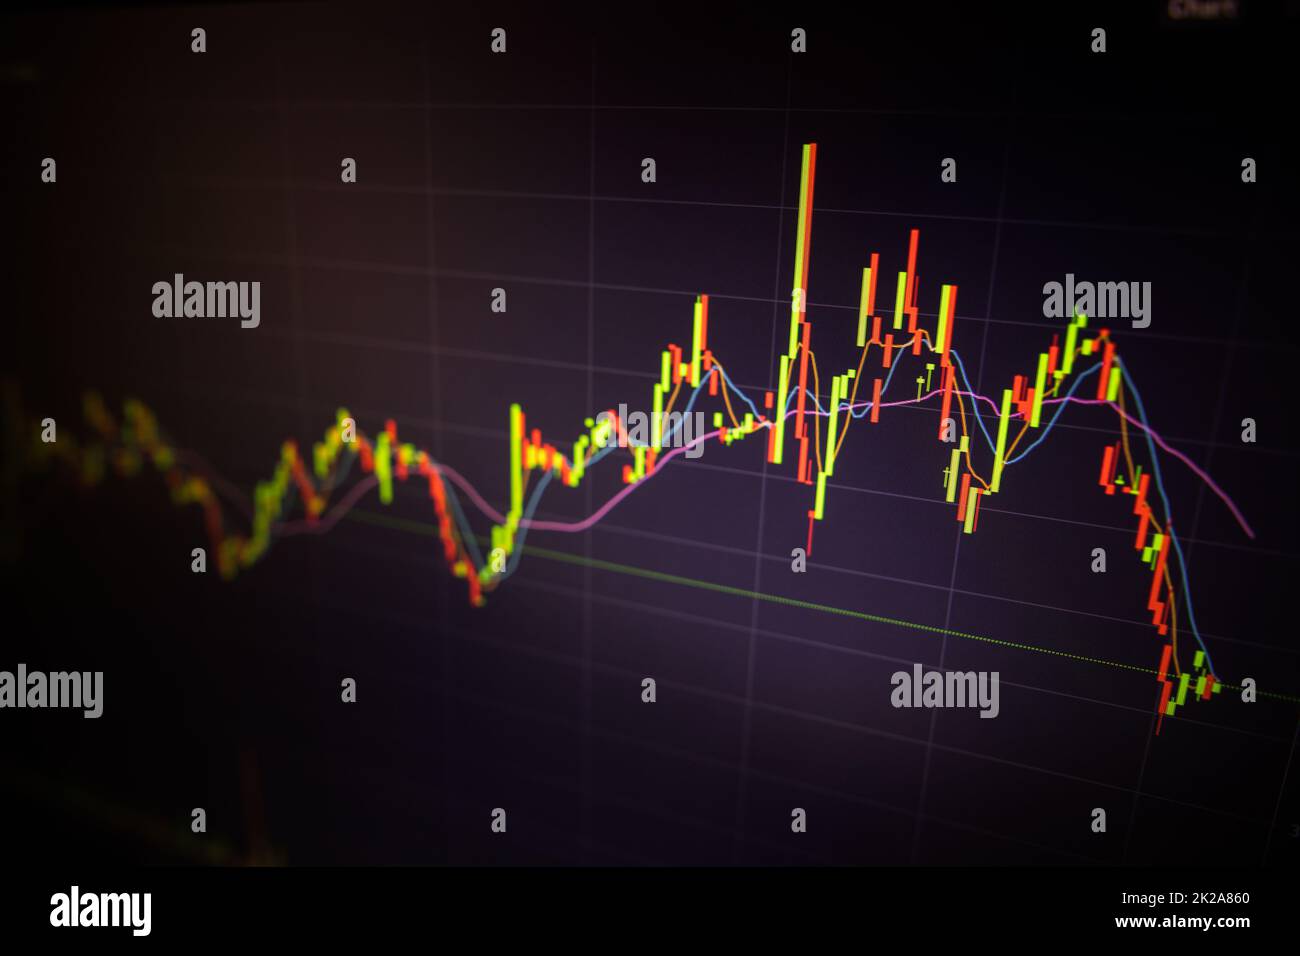 Schermo digitale con grafico di trading finanziario e trend dei prezzi di criptovaluta. Foto Stock